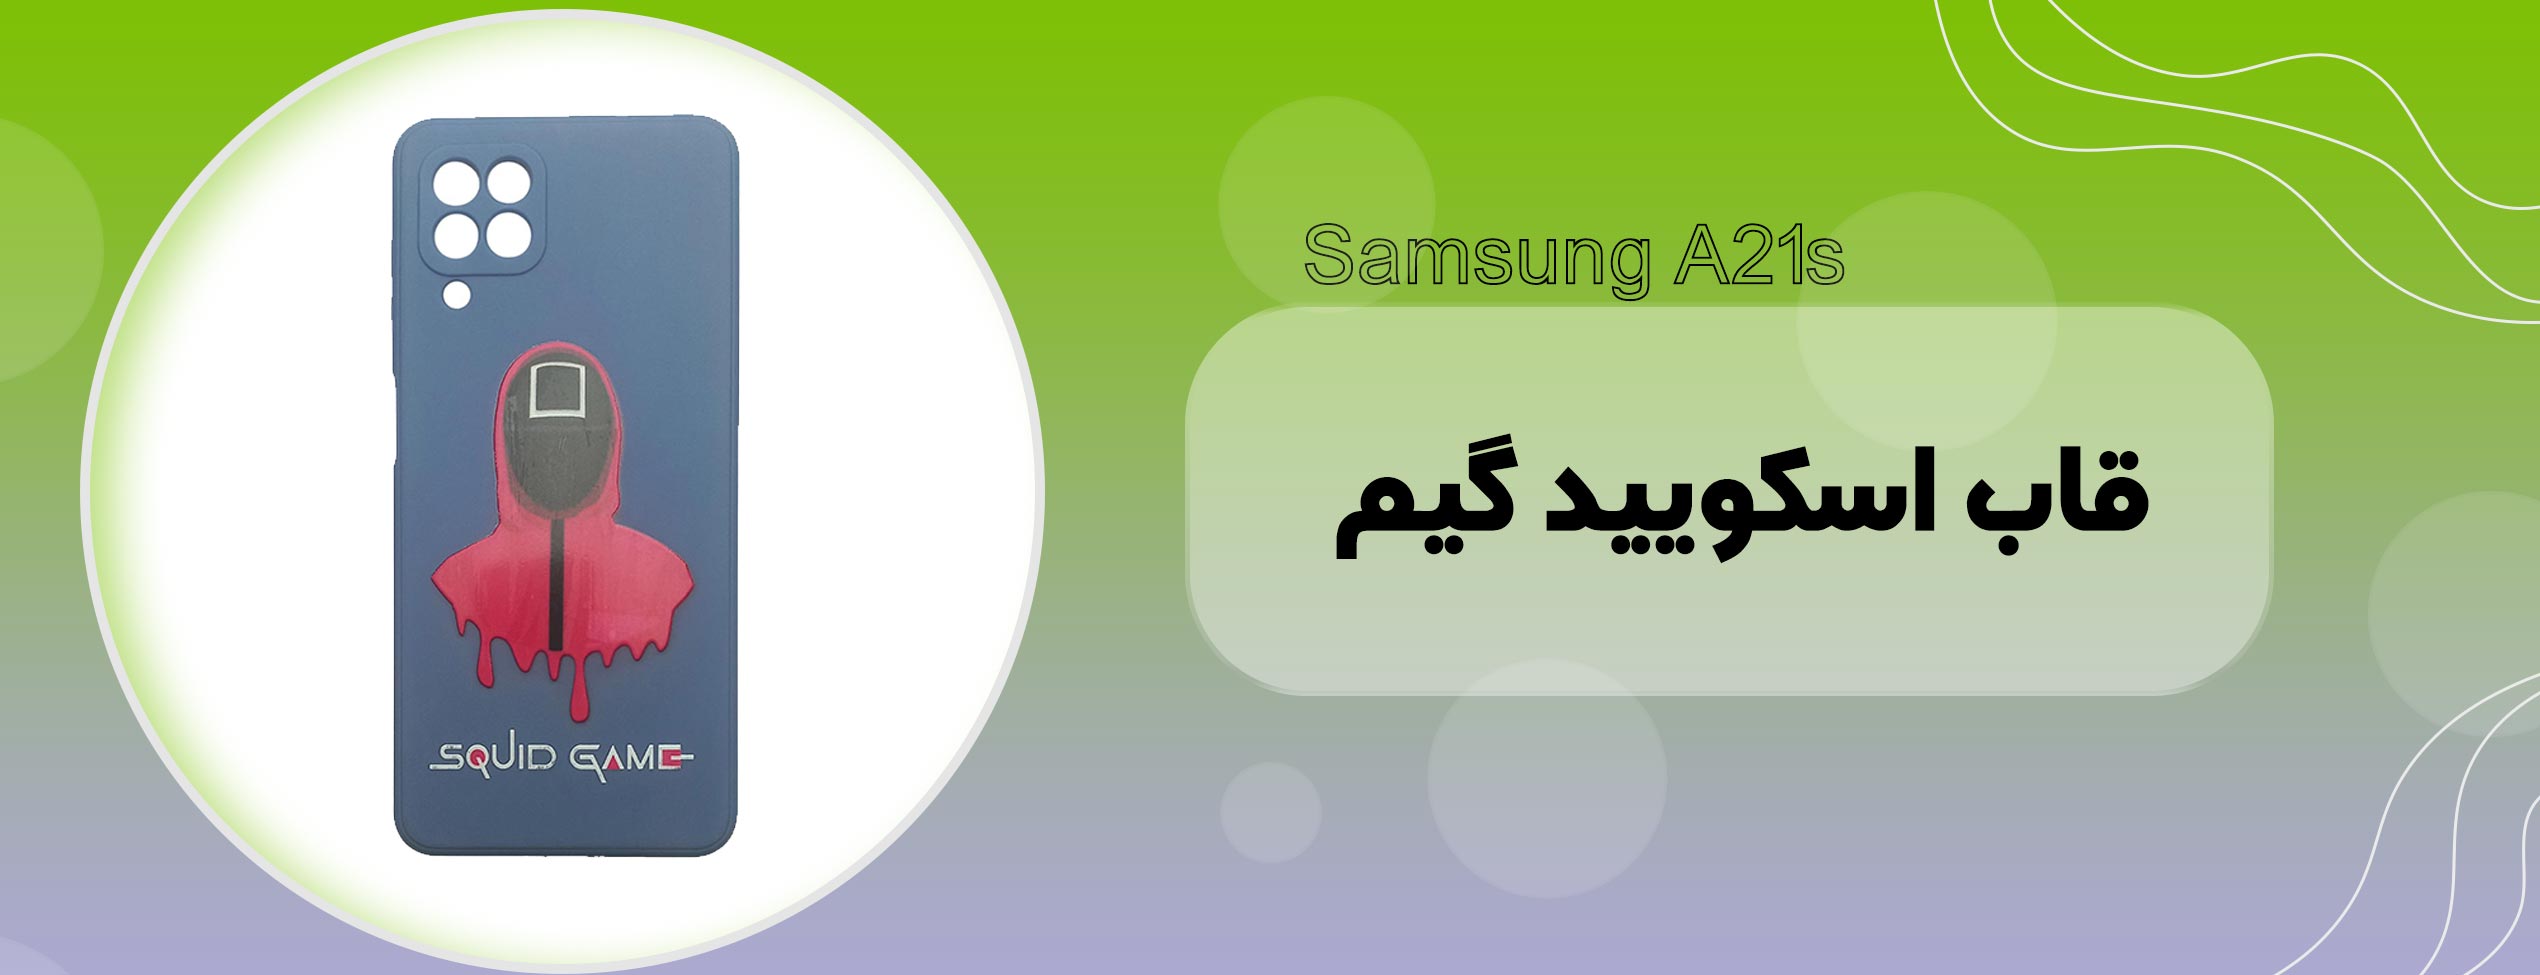 قاب اسکویید گیم گوشی موبایل سامسونگ Samsung A22